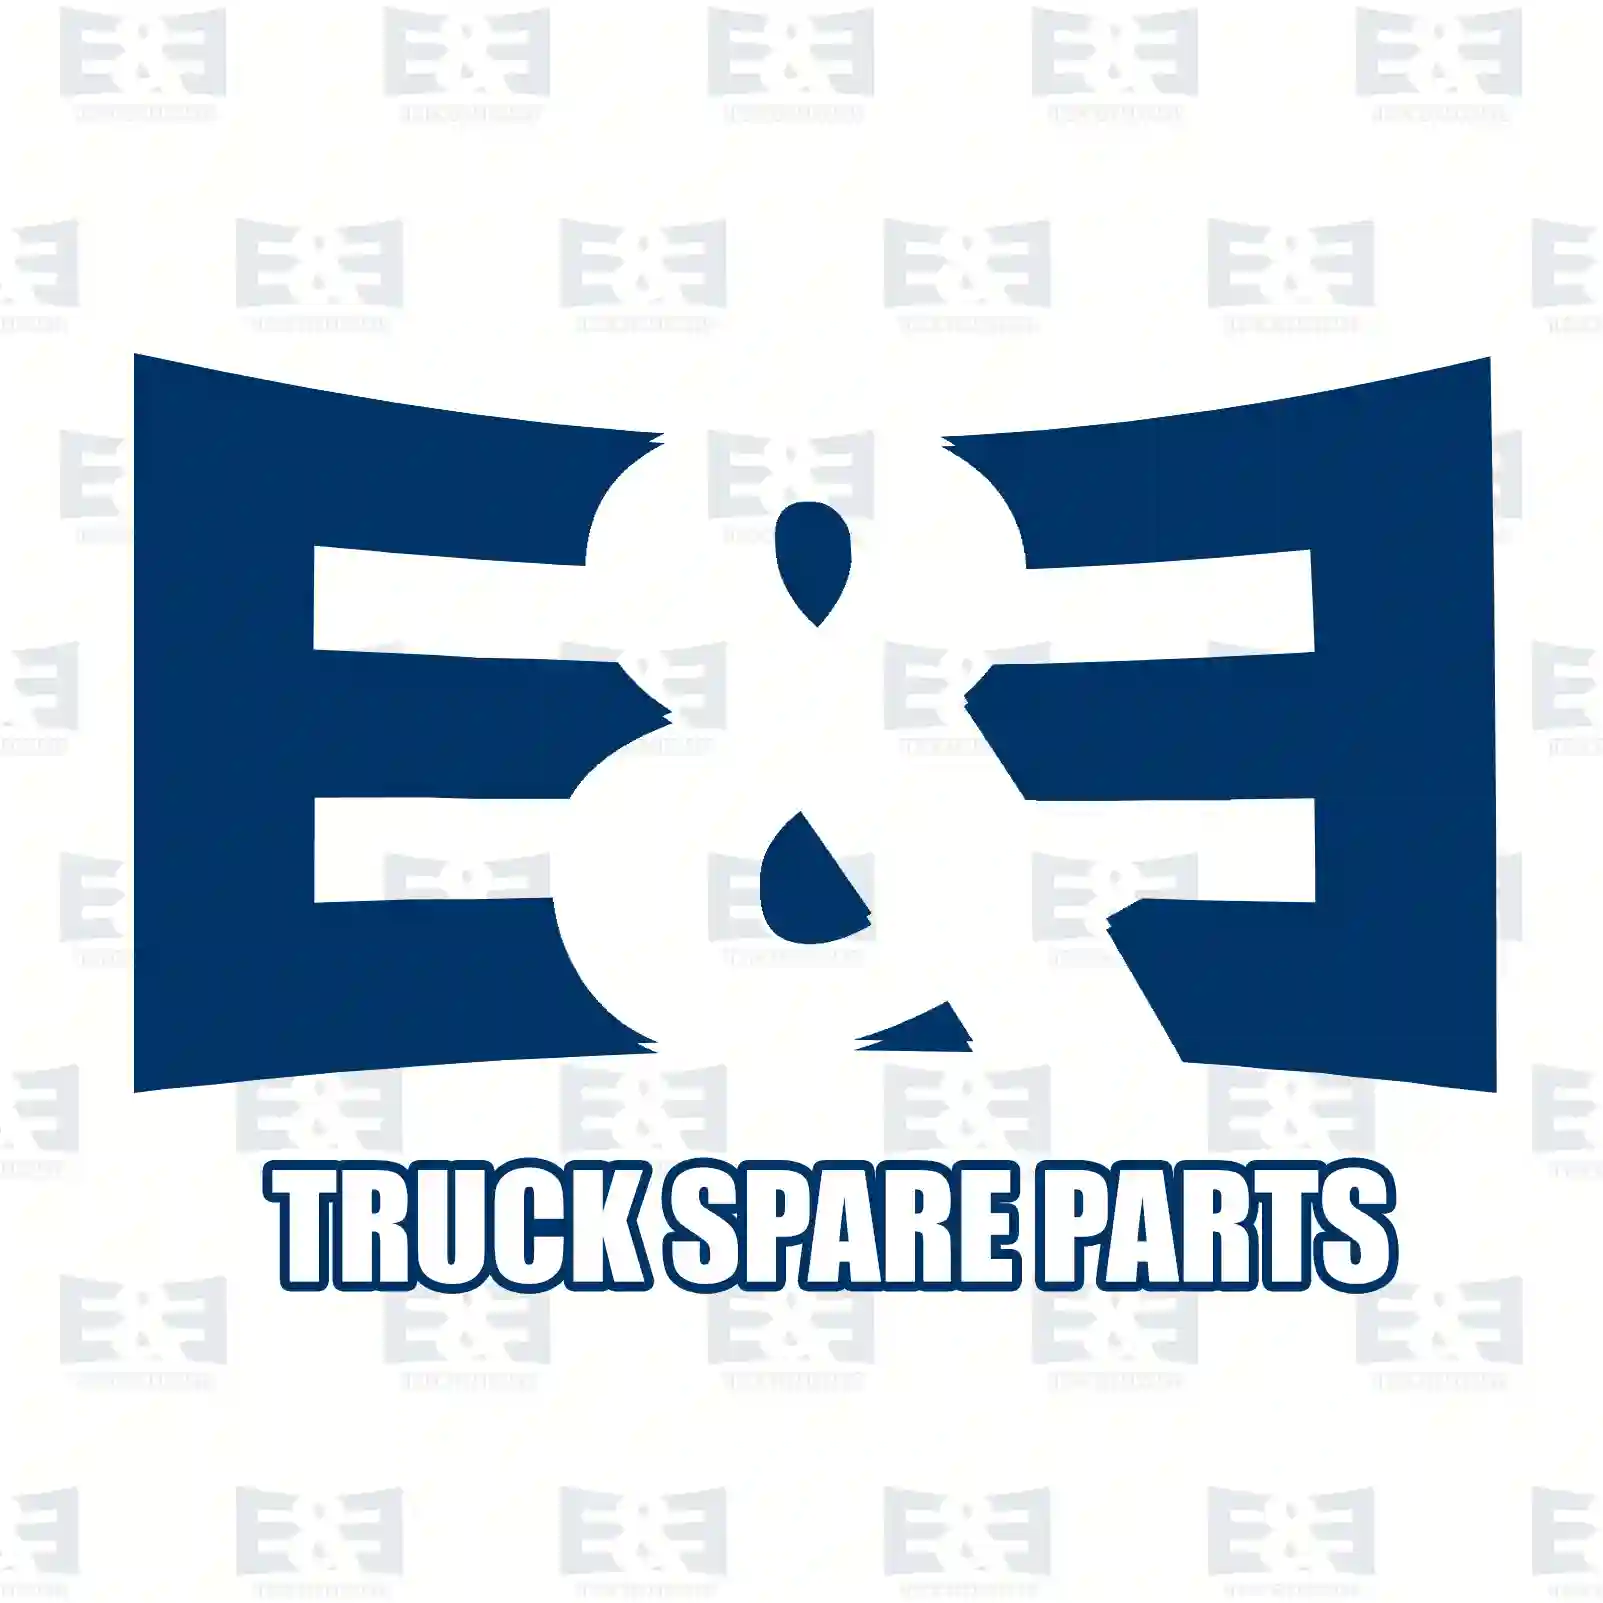 Air tank, 2E2293010, 504197591, 5801545818, , , ||  2E2293010 E&E Truck Spare Parts | Truck Spare Parts, Auotomotive Spare Parts Air tank, 2E2293010, 504197591, 5801545818, , , ||  2E2293010 E&E Truck Spare Parts | Truck Spare Parts, Auotomotive Spare Parts